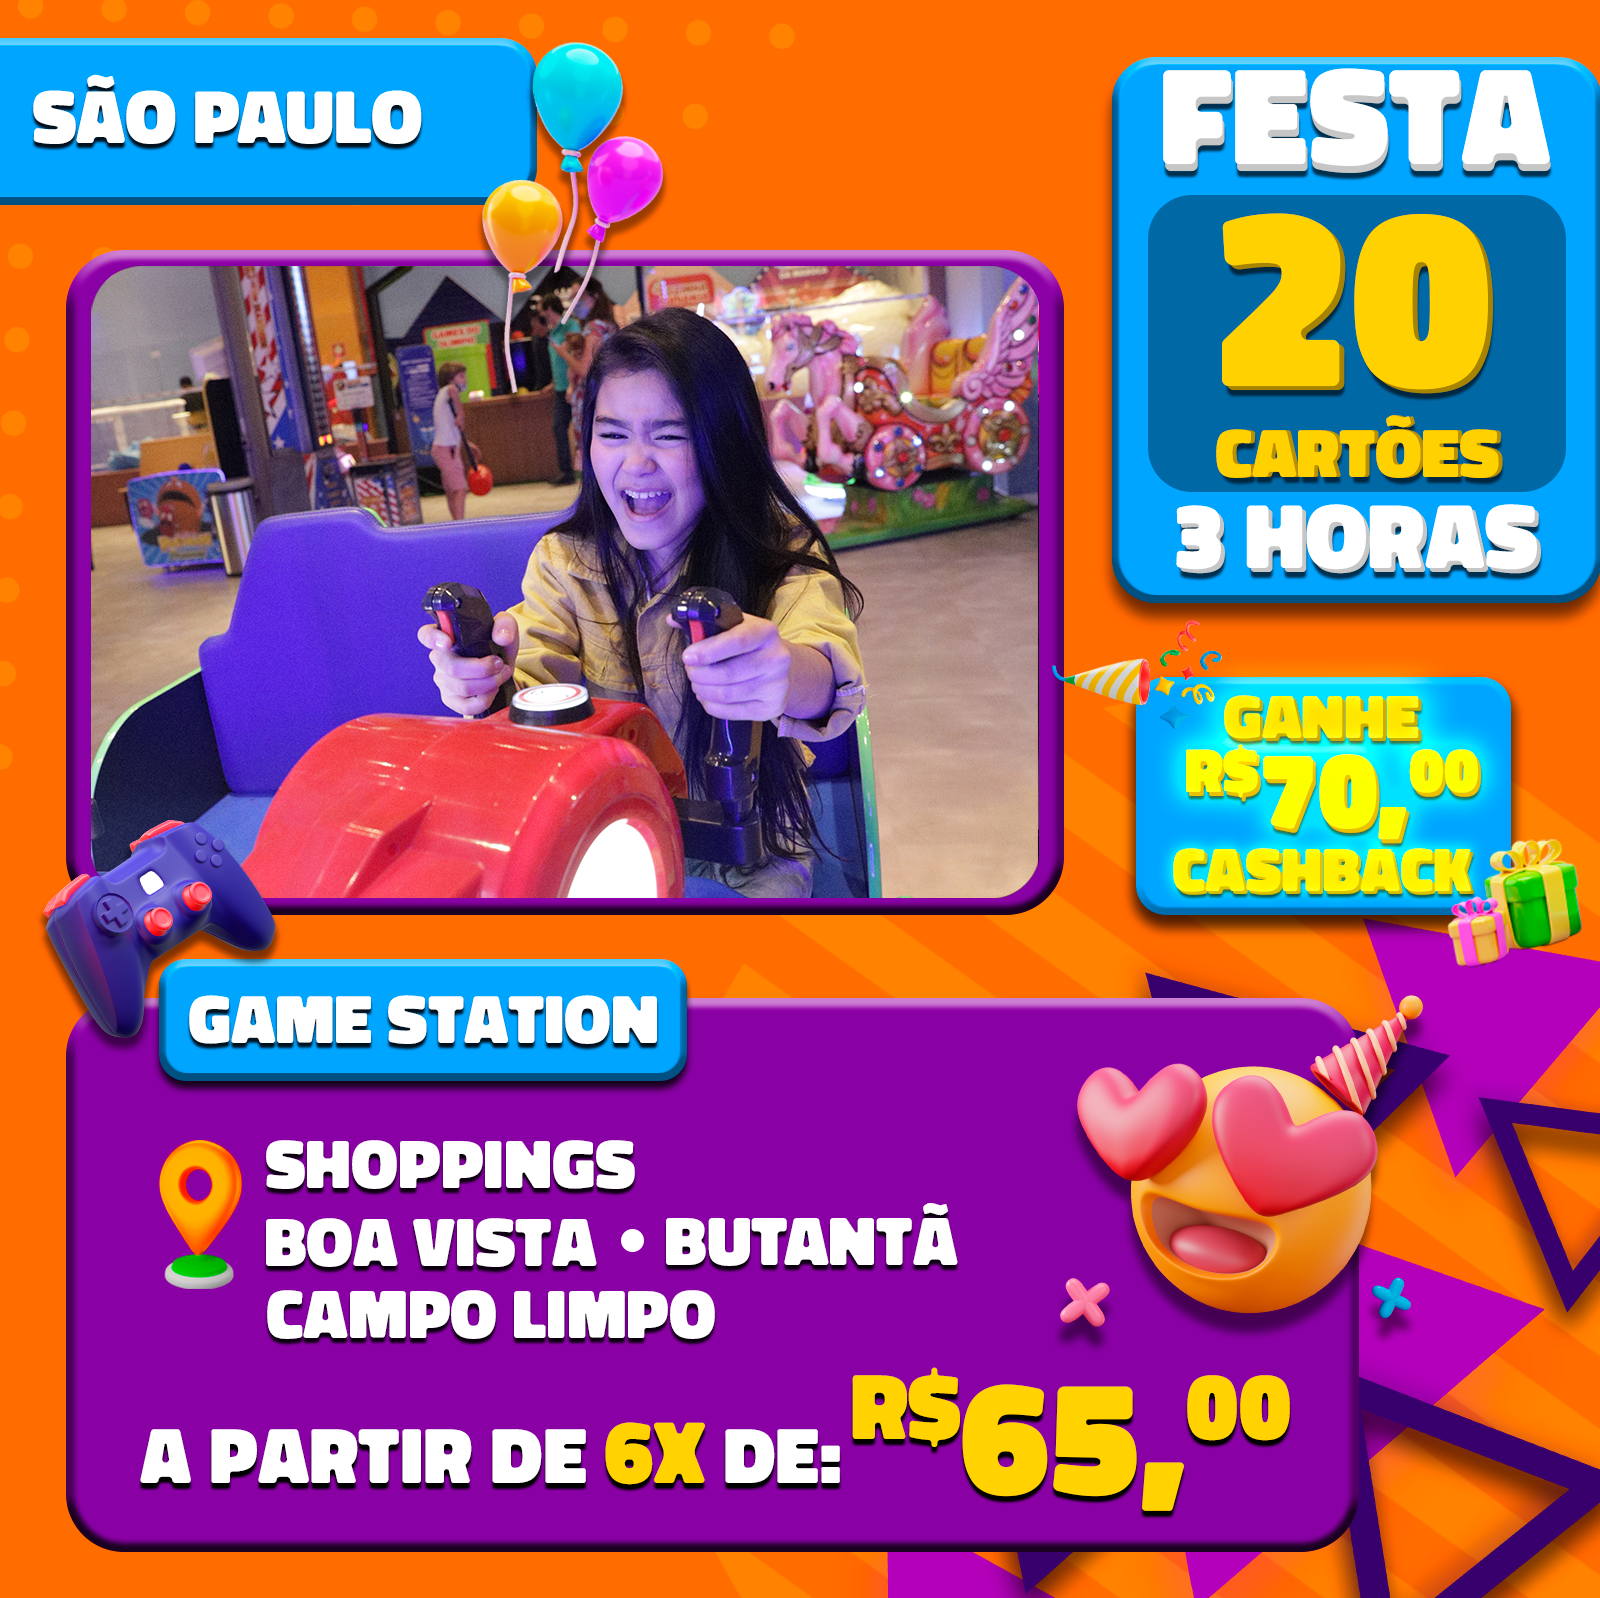 Game Station - Shopping Bandeiras